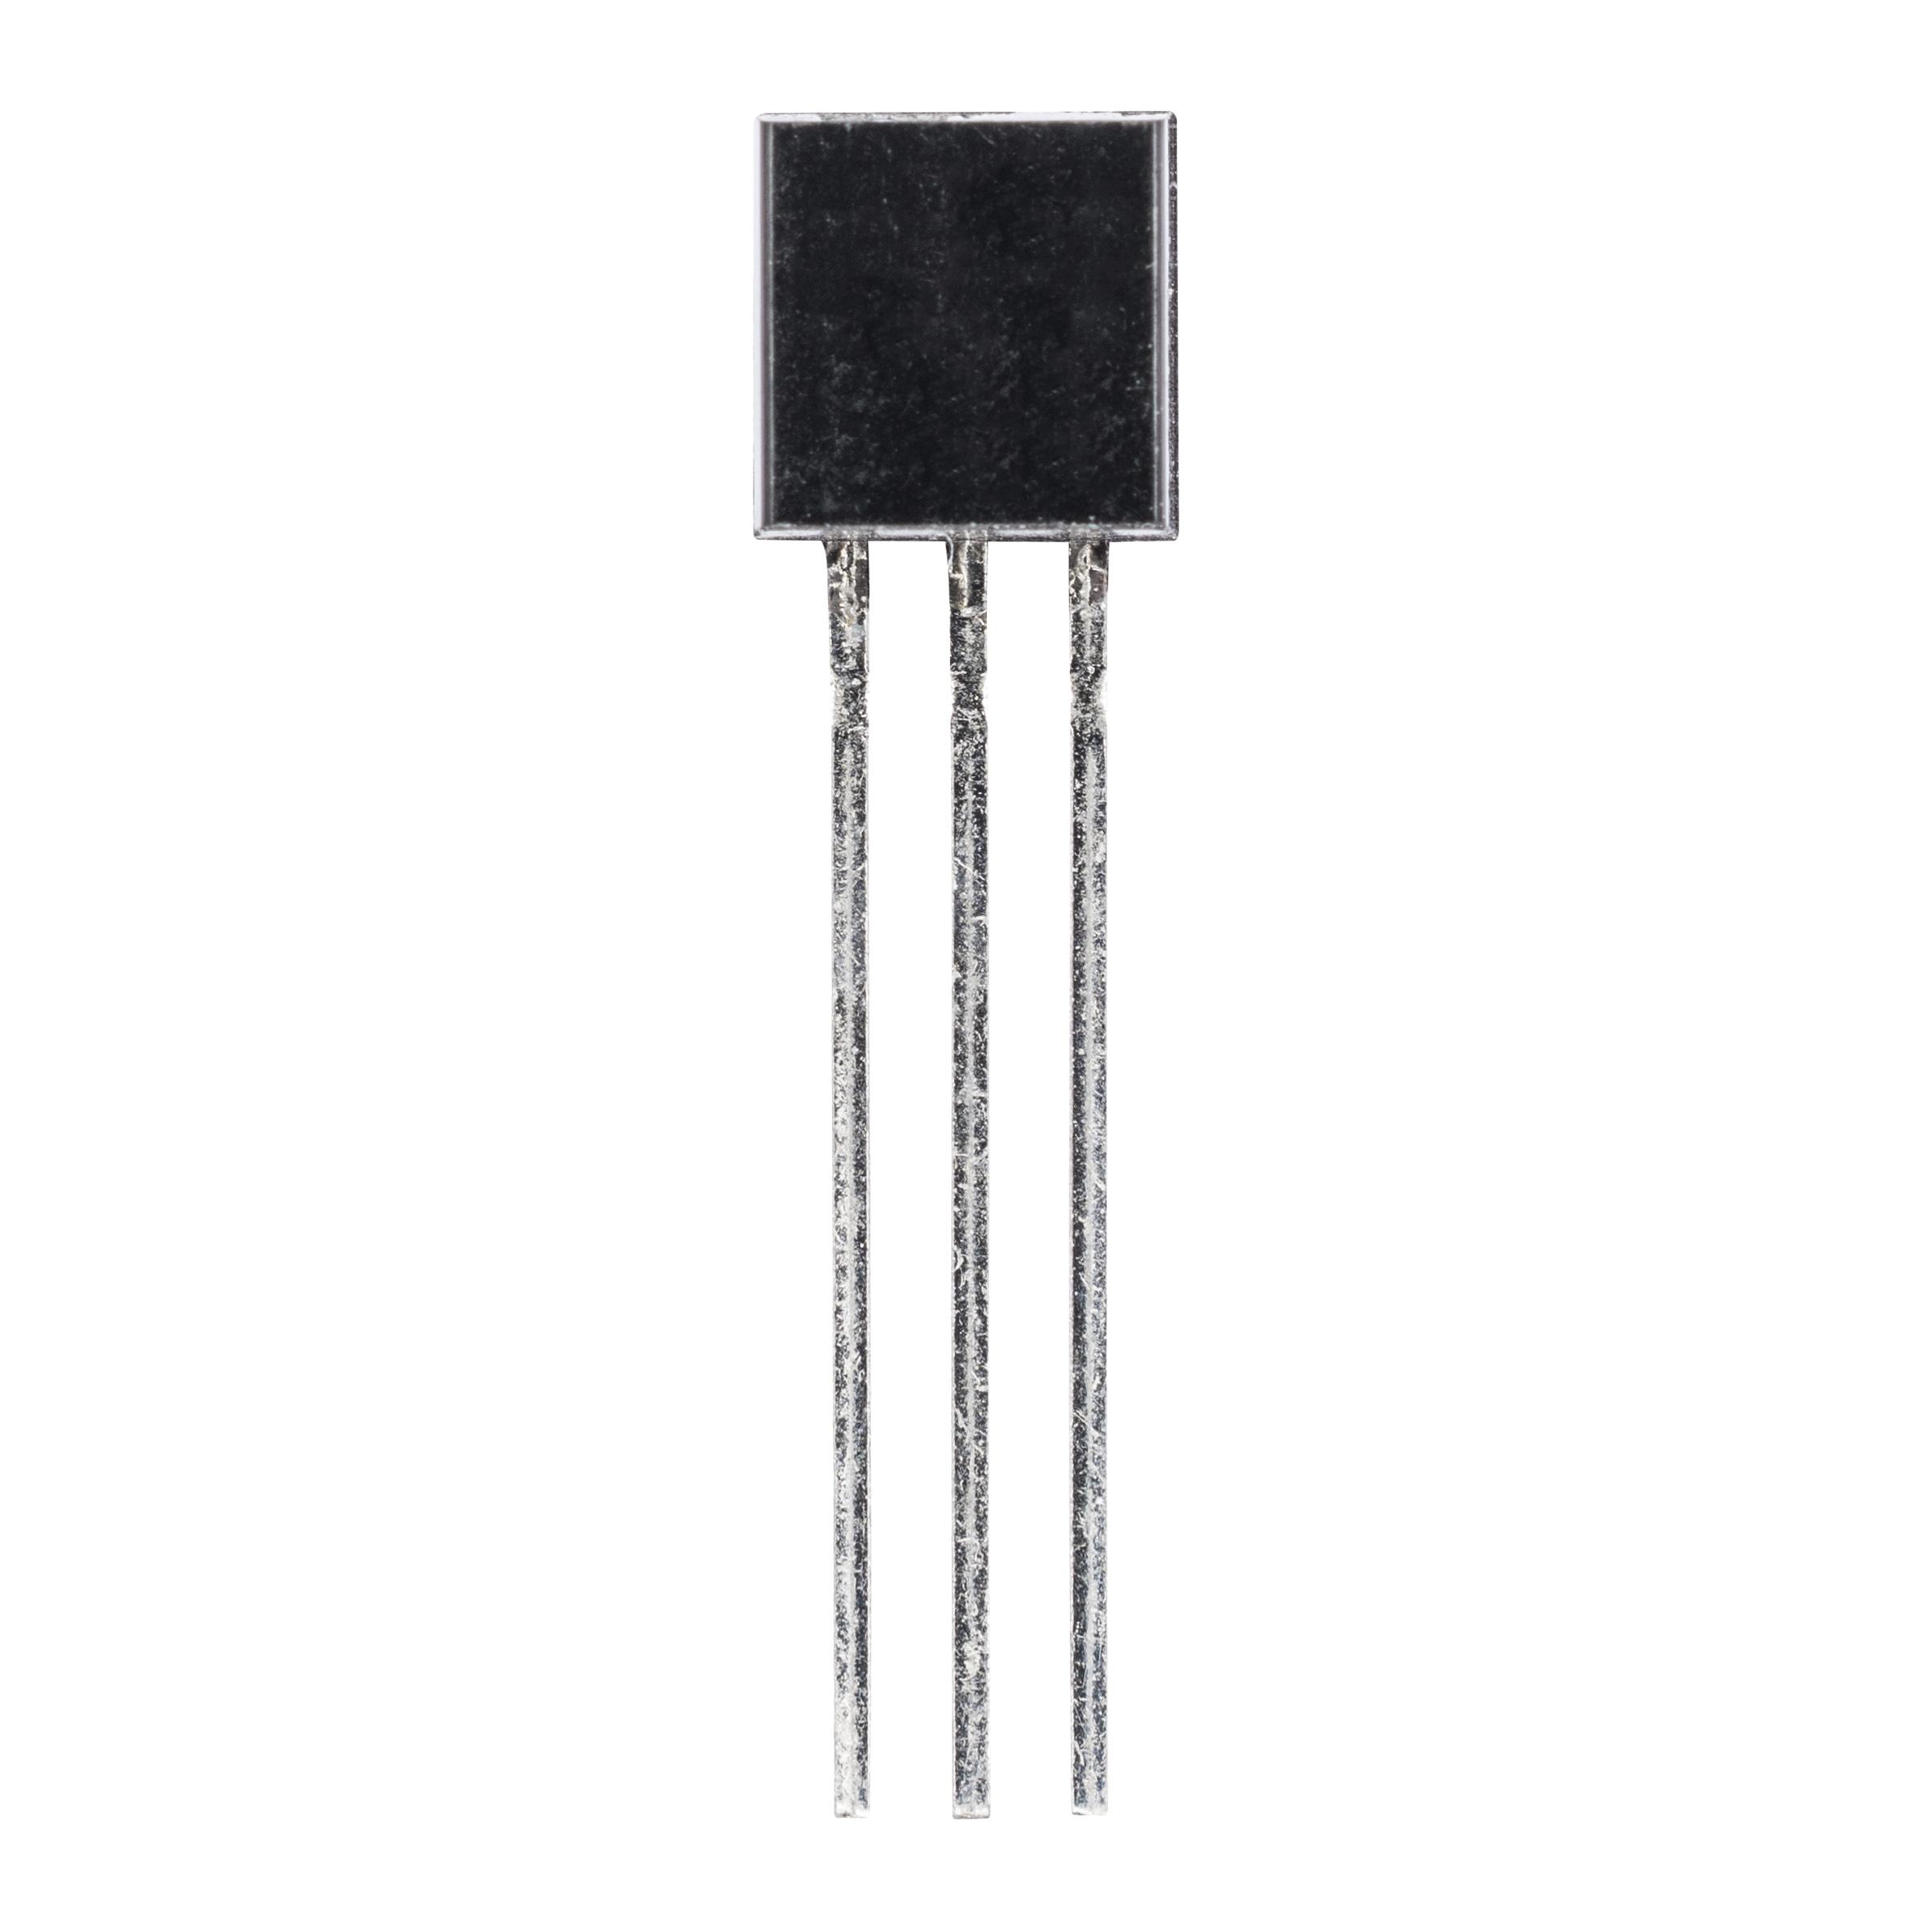 2SD965 (транзистор біполярний NPN)